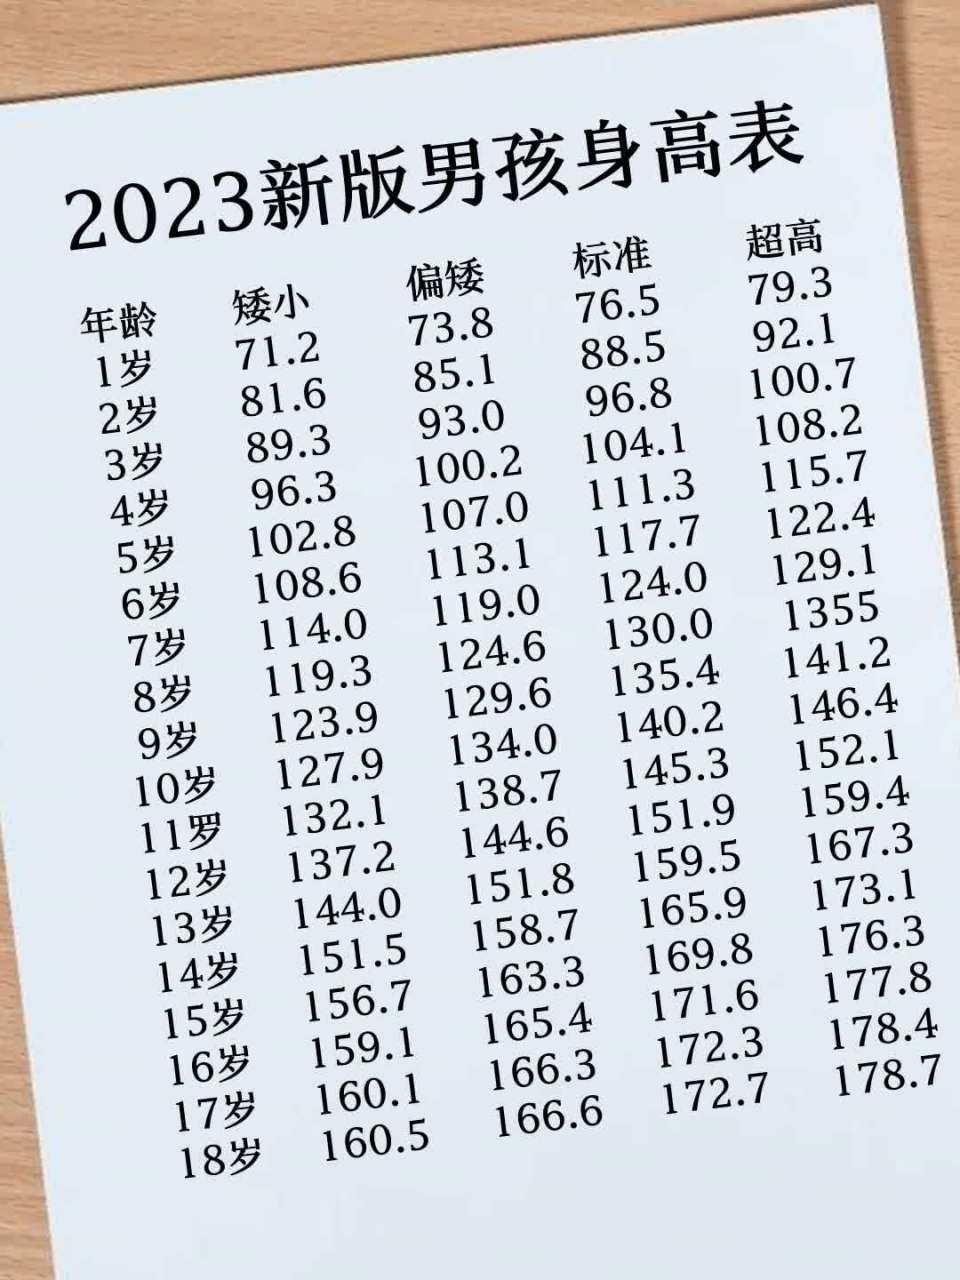 2023最新儿童身高体重标准表出炉